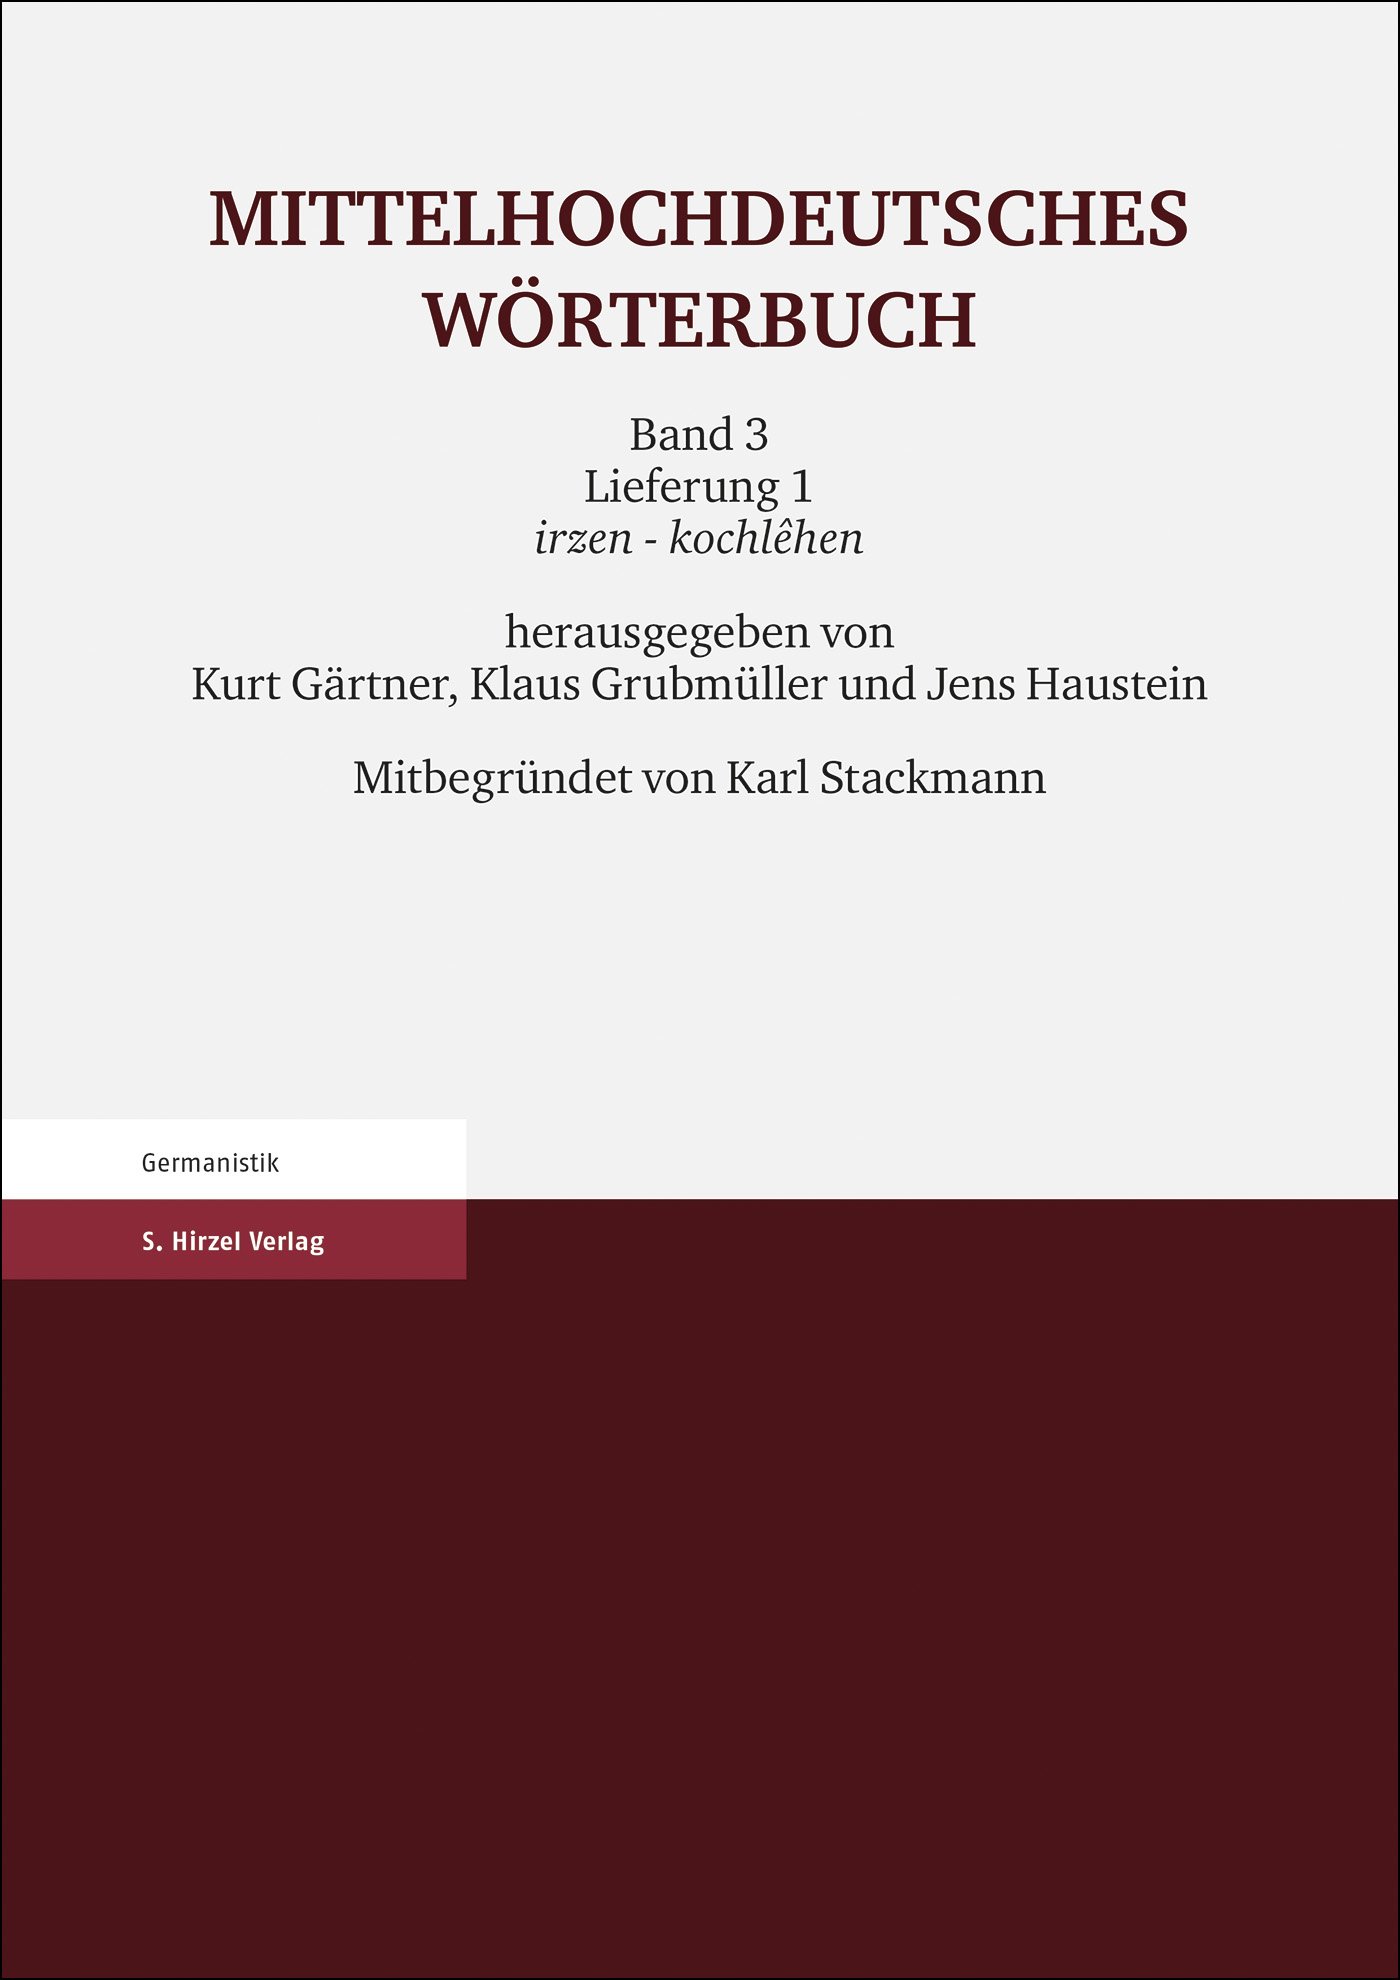 Mittelhochdeutsches Wörterbuch. Dritter Band, Lieferung 1